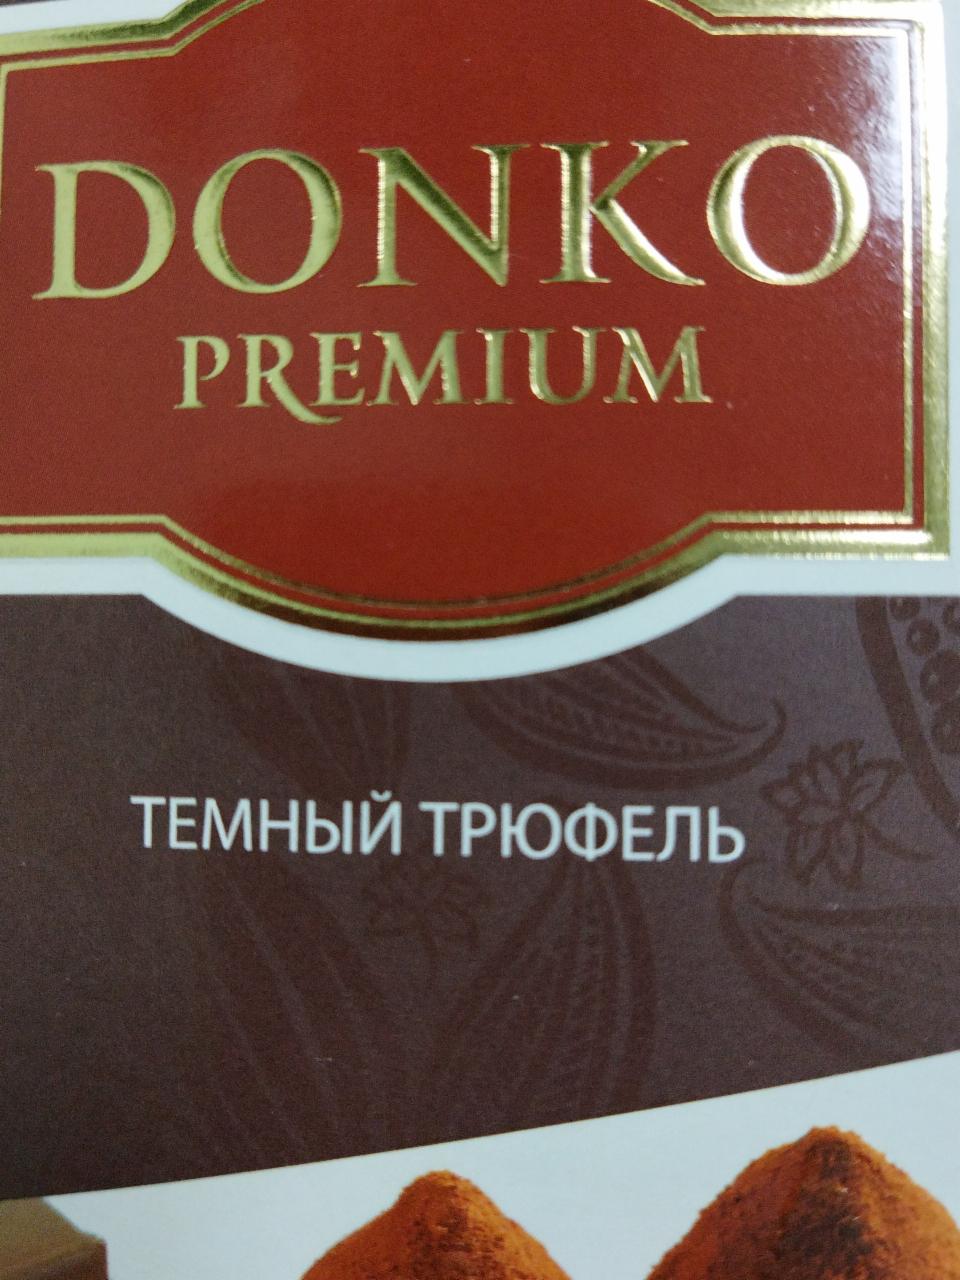 Фото - Шоколад донко тёмный трюфель Donko